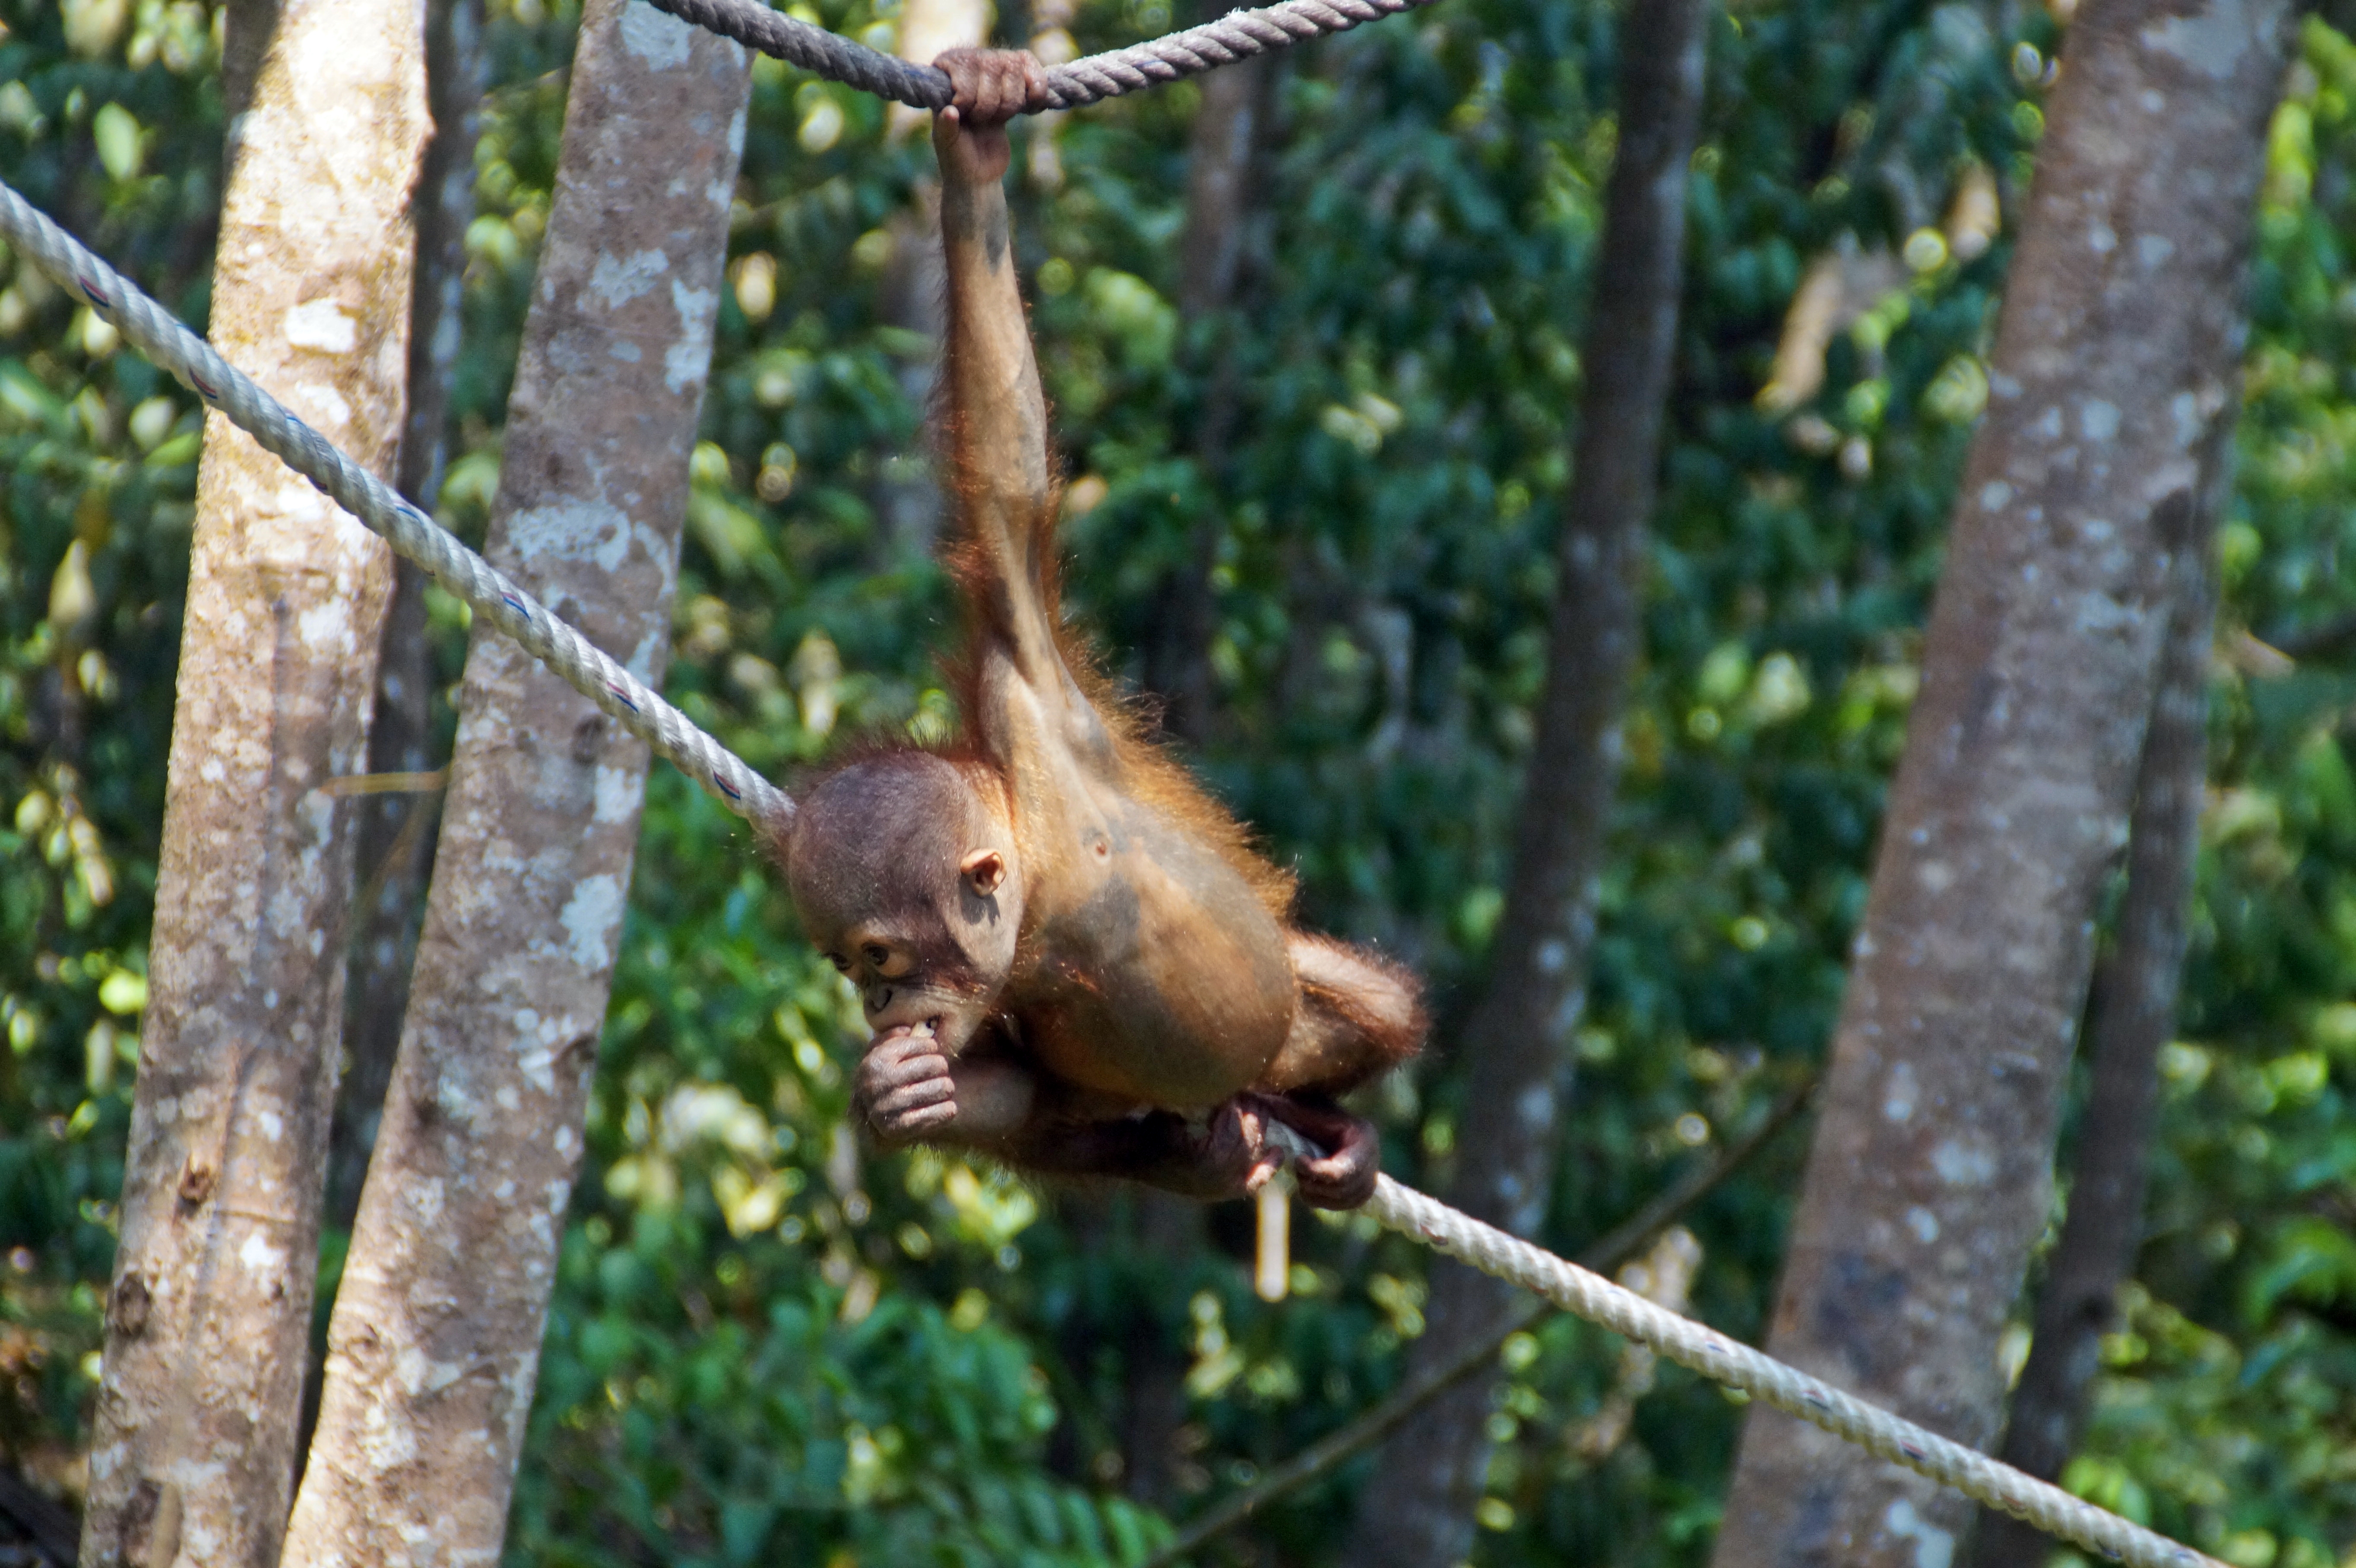 An orangutan at Shangri-La Resort in Sabah